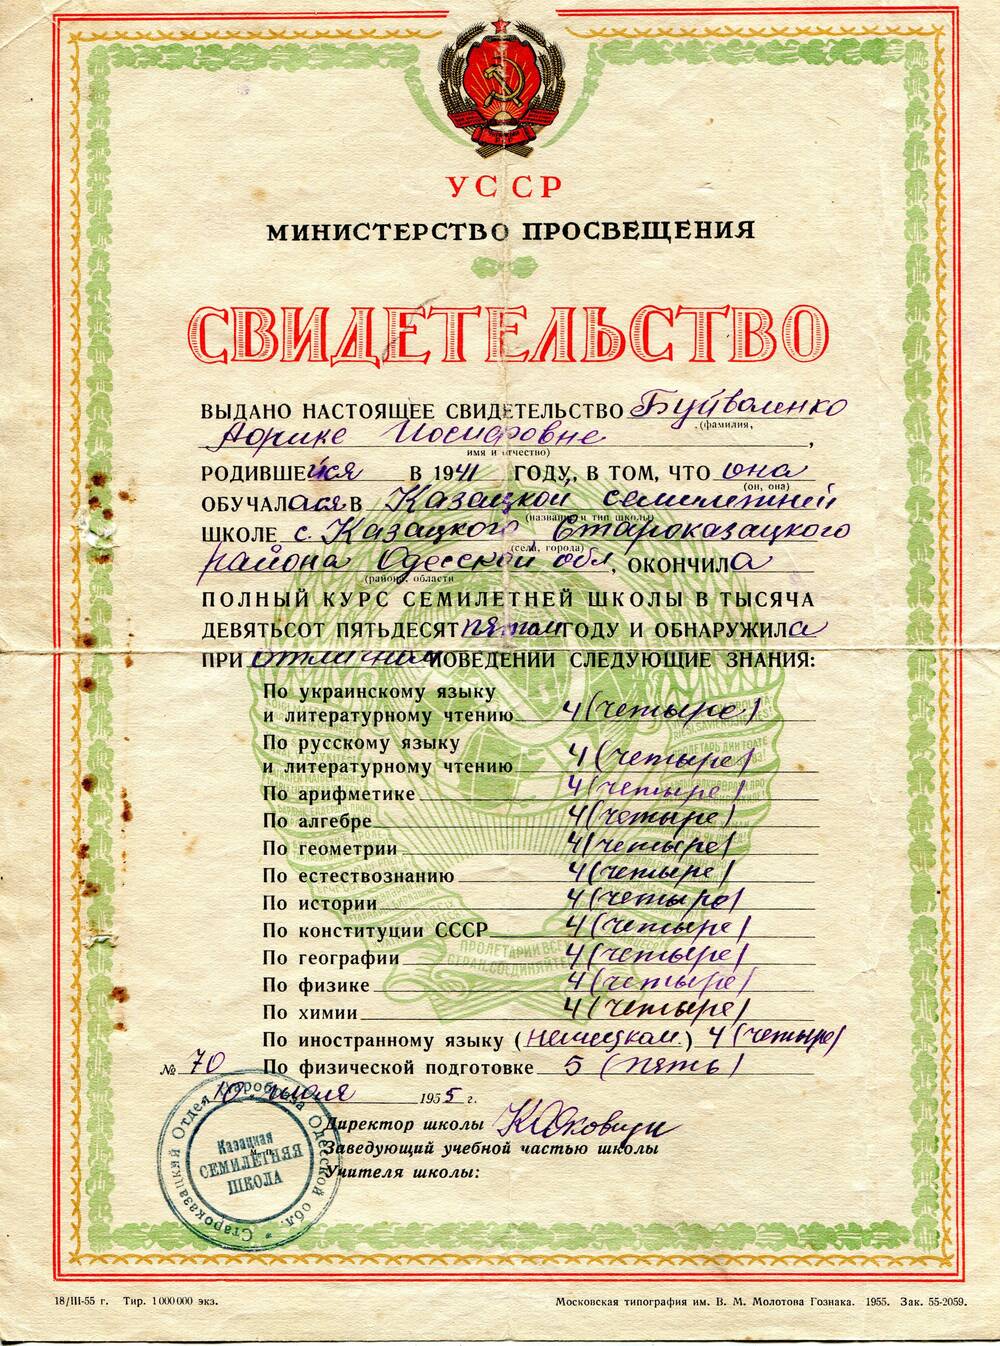 Свидетельство № 70 выдано Буйволенко Аорике Иосифовне, родившейся в 1941 году, об окончании Казацкой семилетней школы с Казацкого Староказацкого района Одесской области.